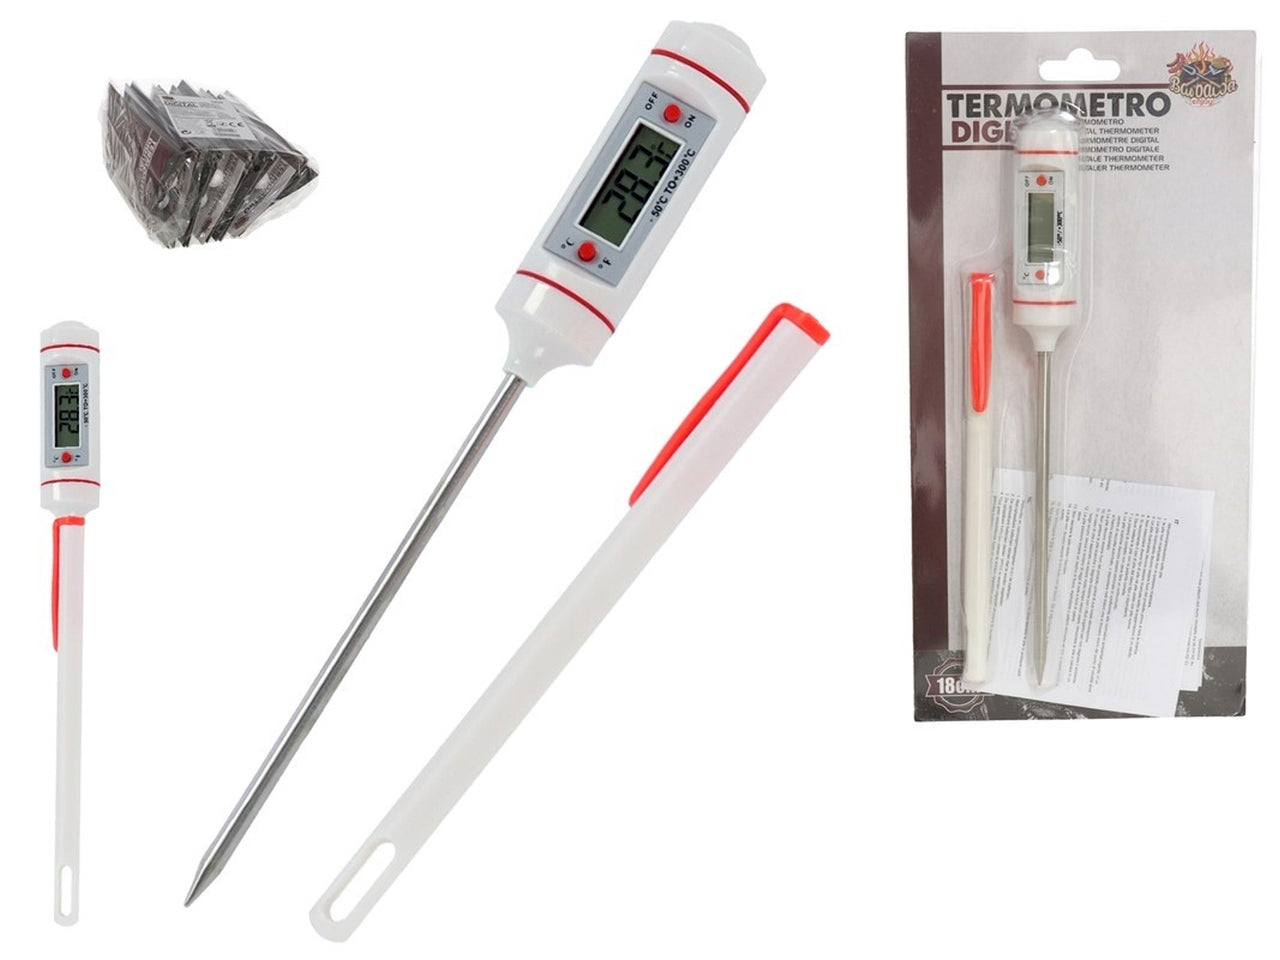 Termometro digitale da cucina in acciaio inossidabile, 18cm - Barbacoa